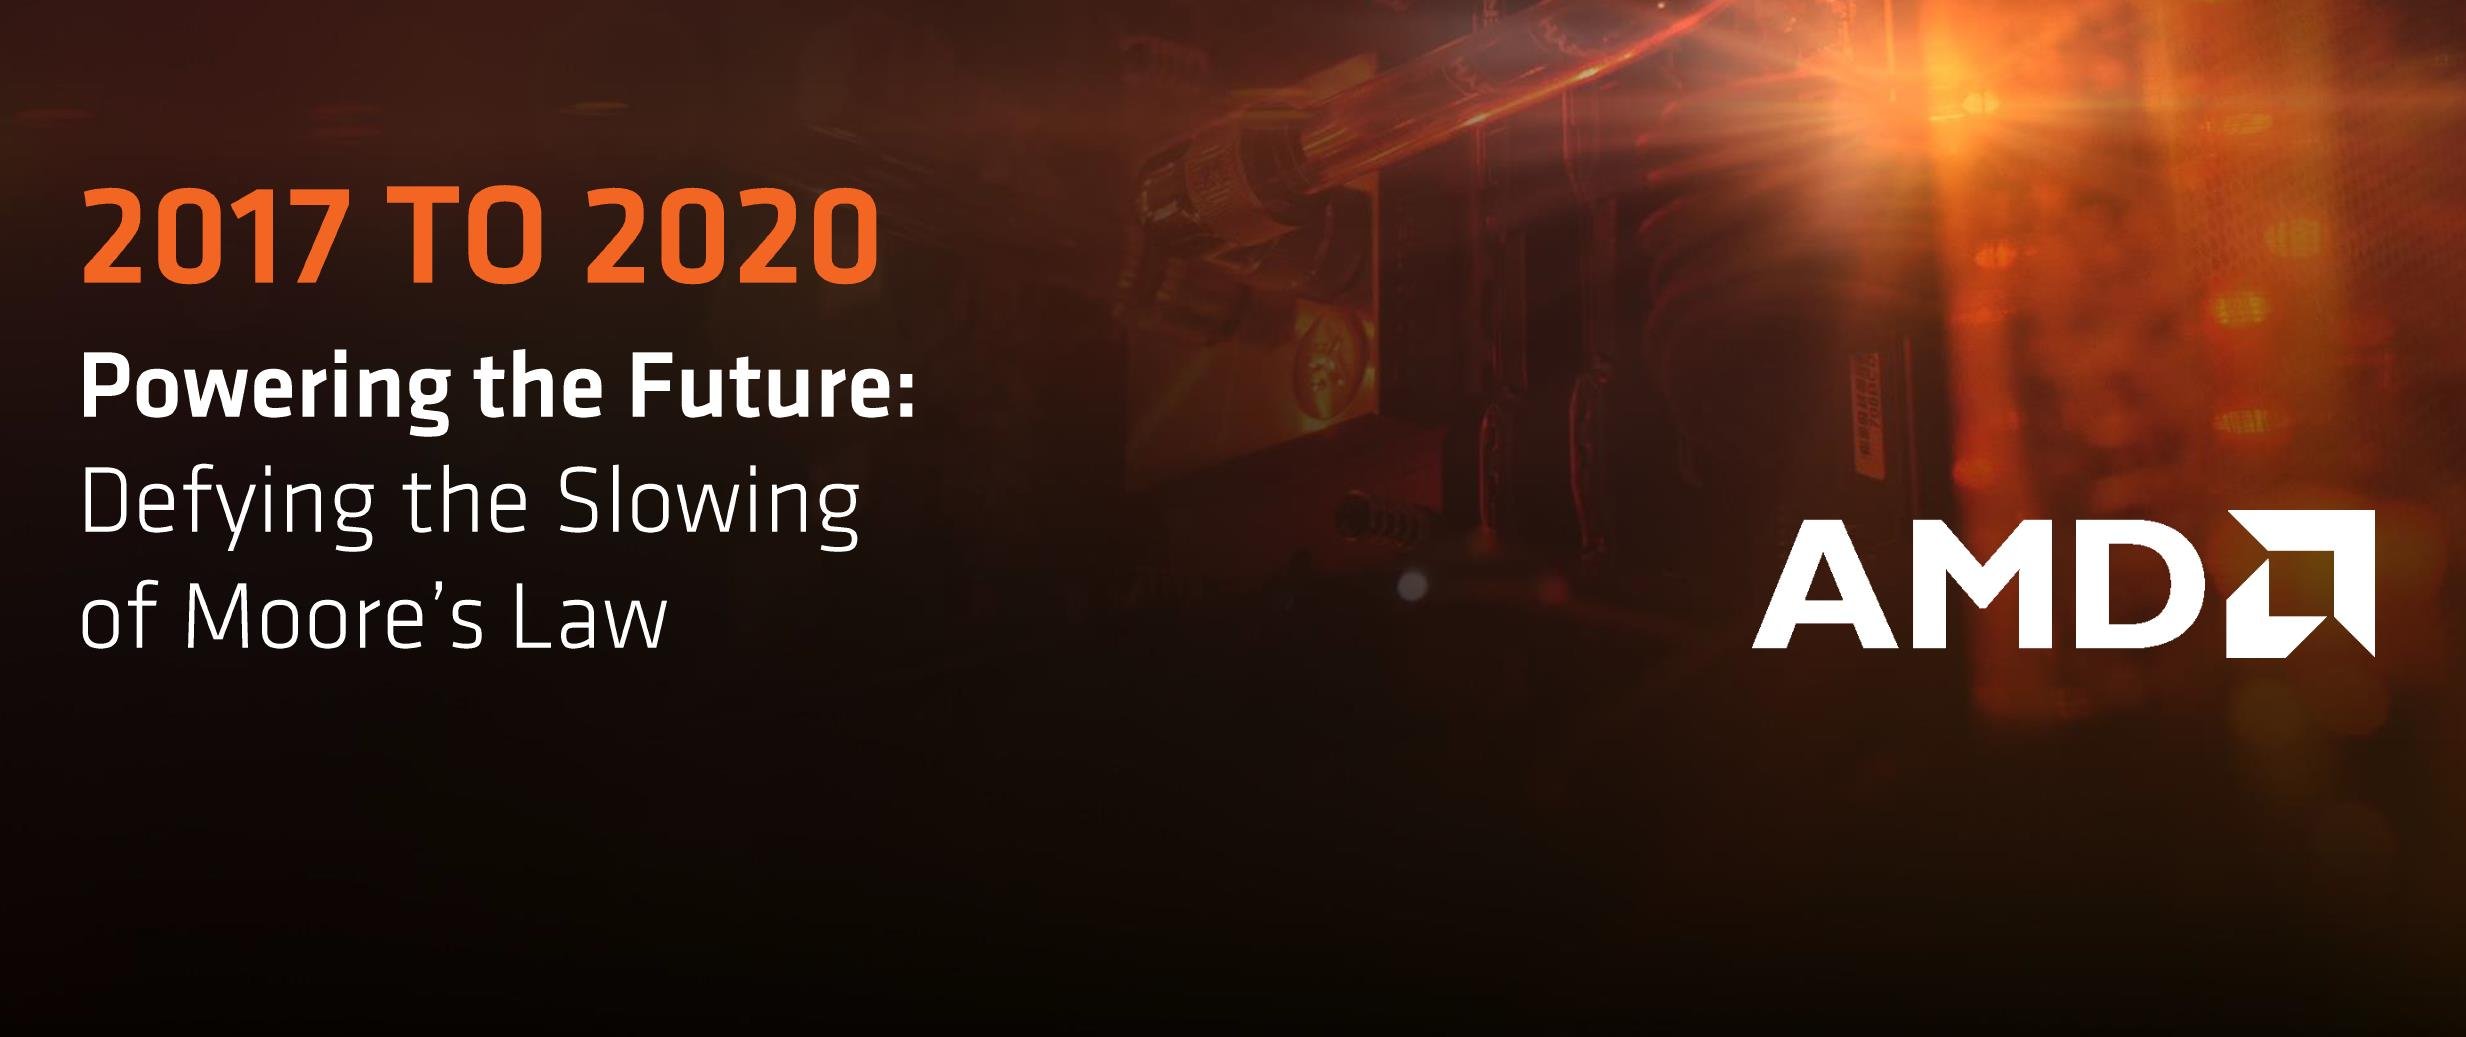 AMD roadmap 2020